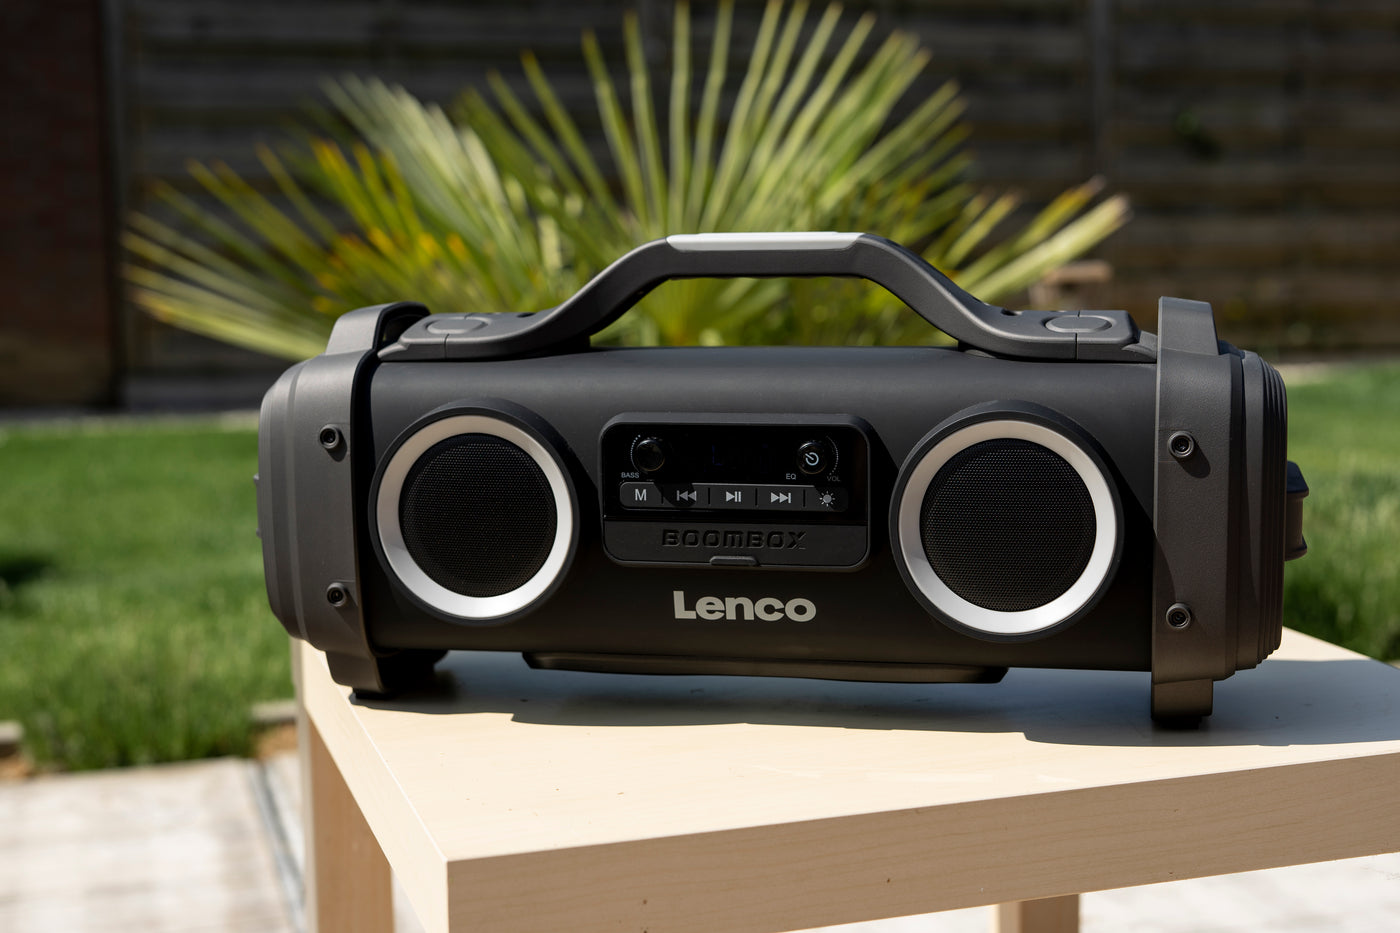 LENCO SPR-200BK - Odporny na zachlapania głośnik Bluetooth® z radiem FM USB i micro SD z efektami świetlnymi - Czarny